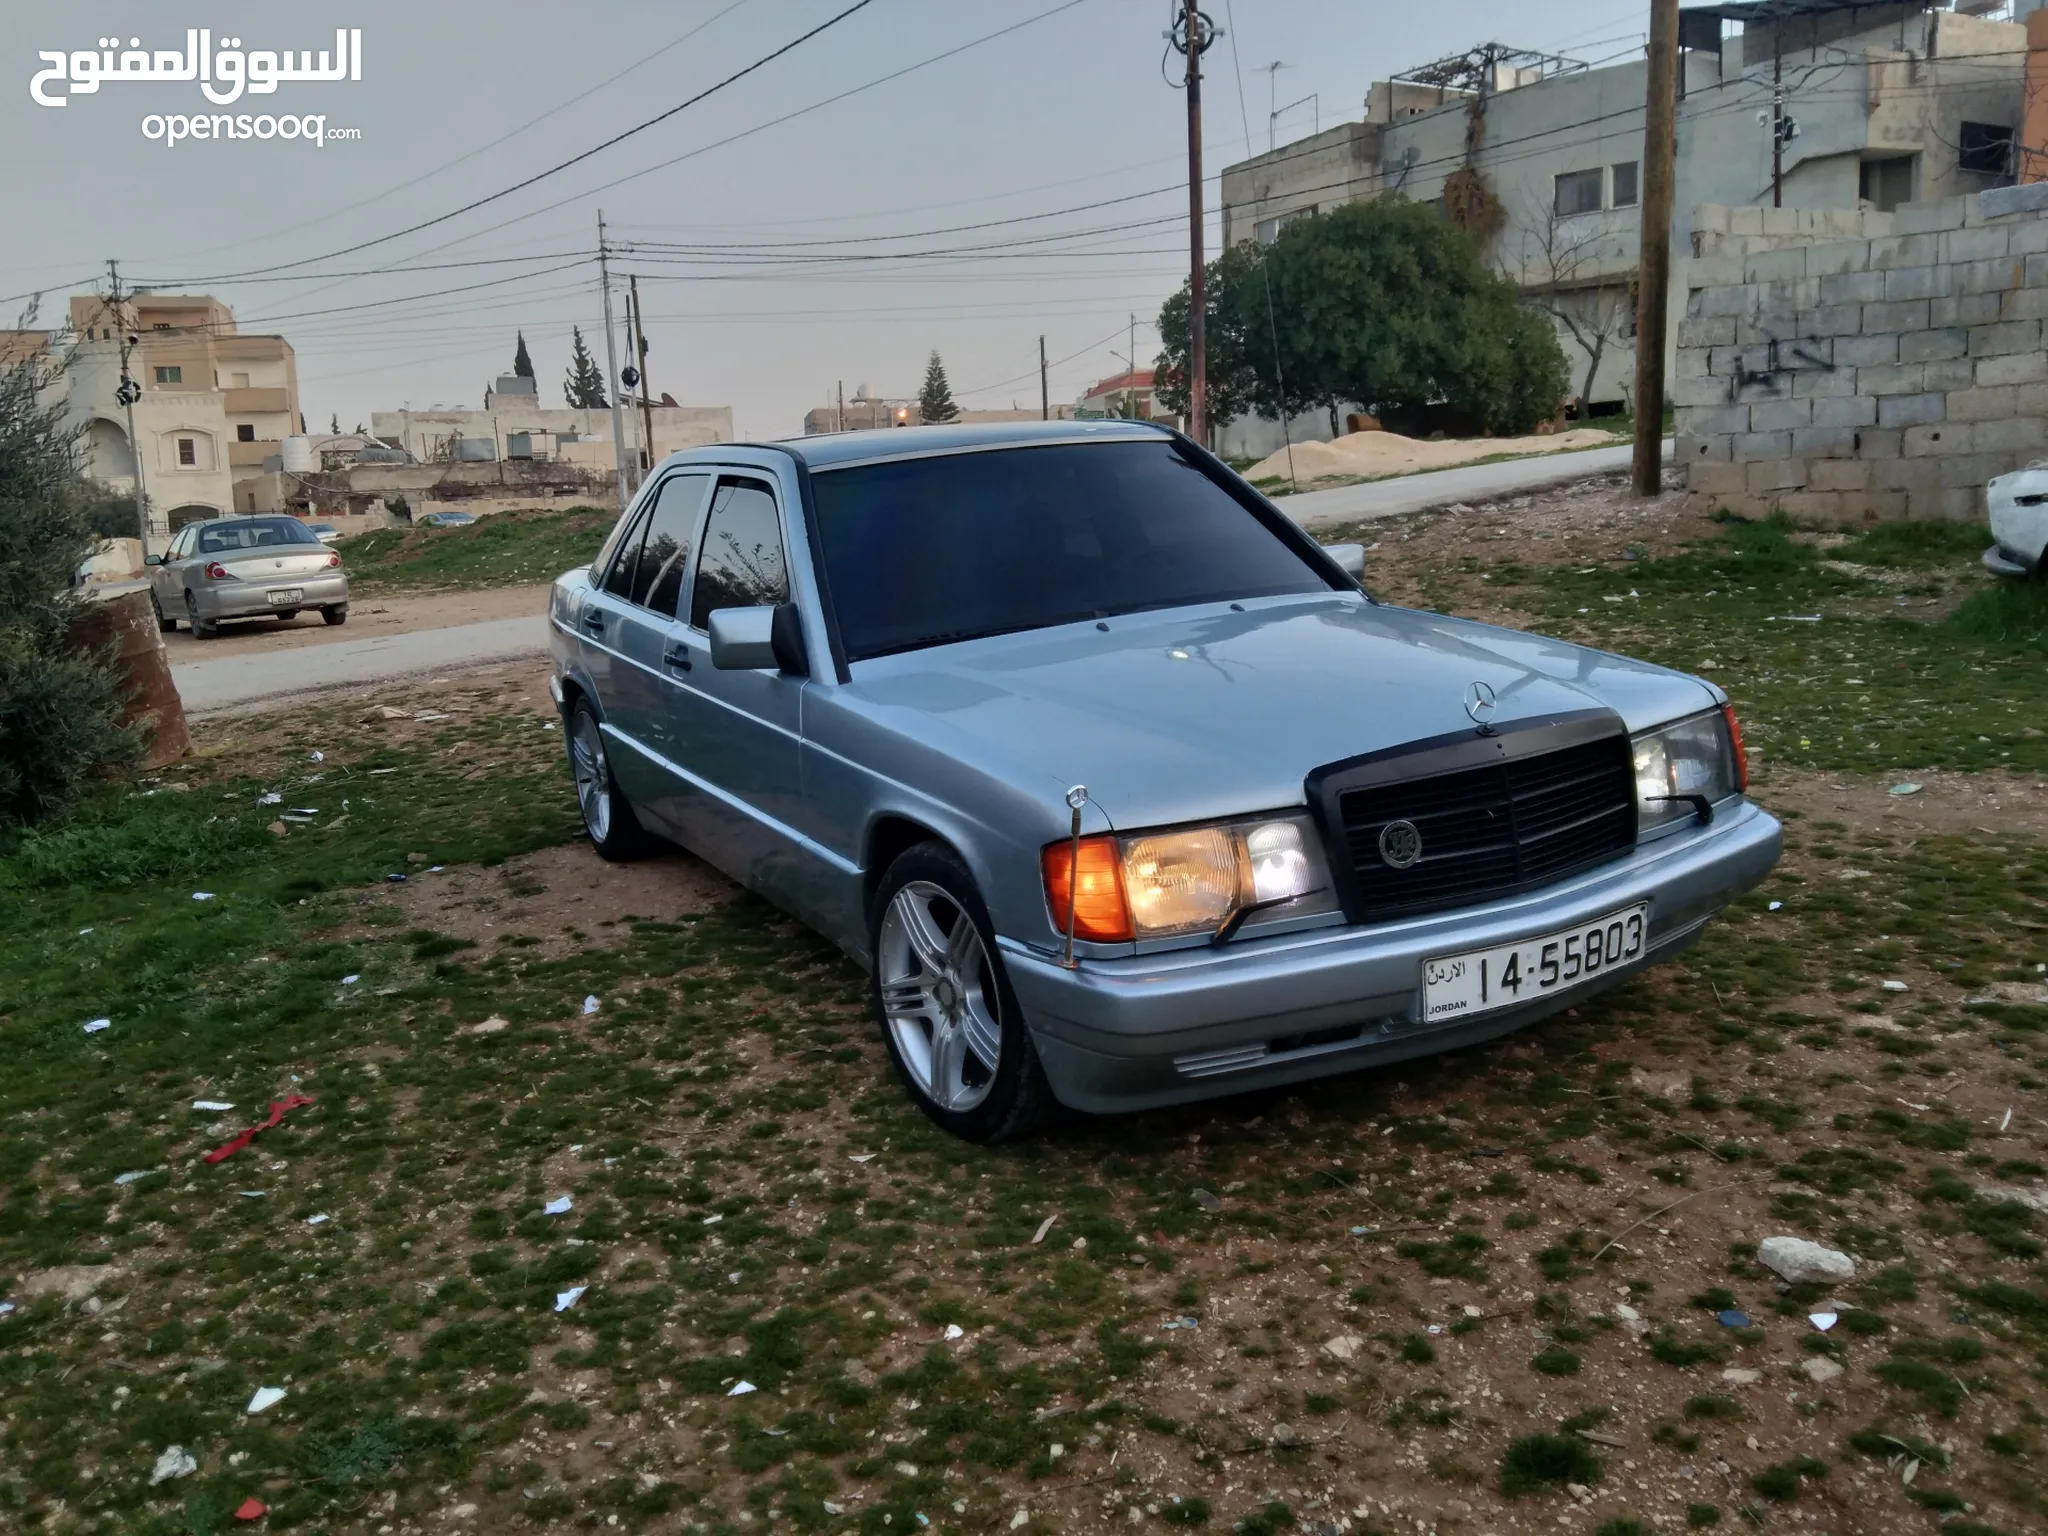 مرسيدس بنز E 190 للبيع في الأردن : مستعملة وجديدة : مرسيدس بنز E 190 بارخص  سعر